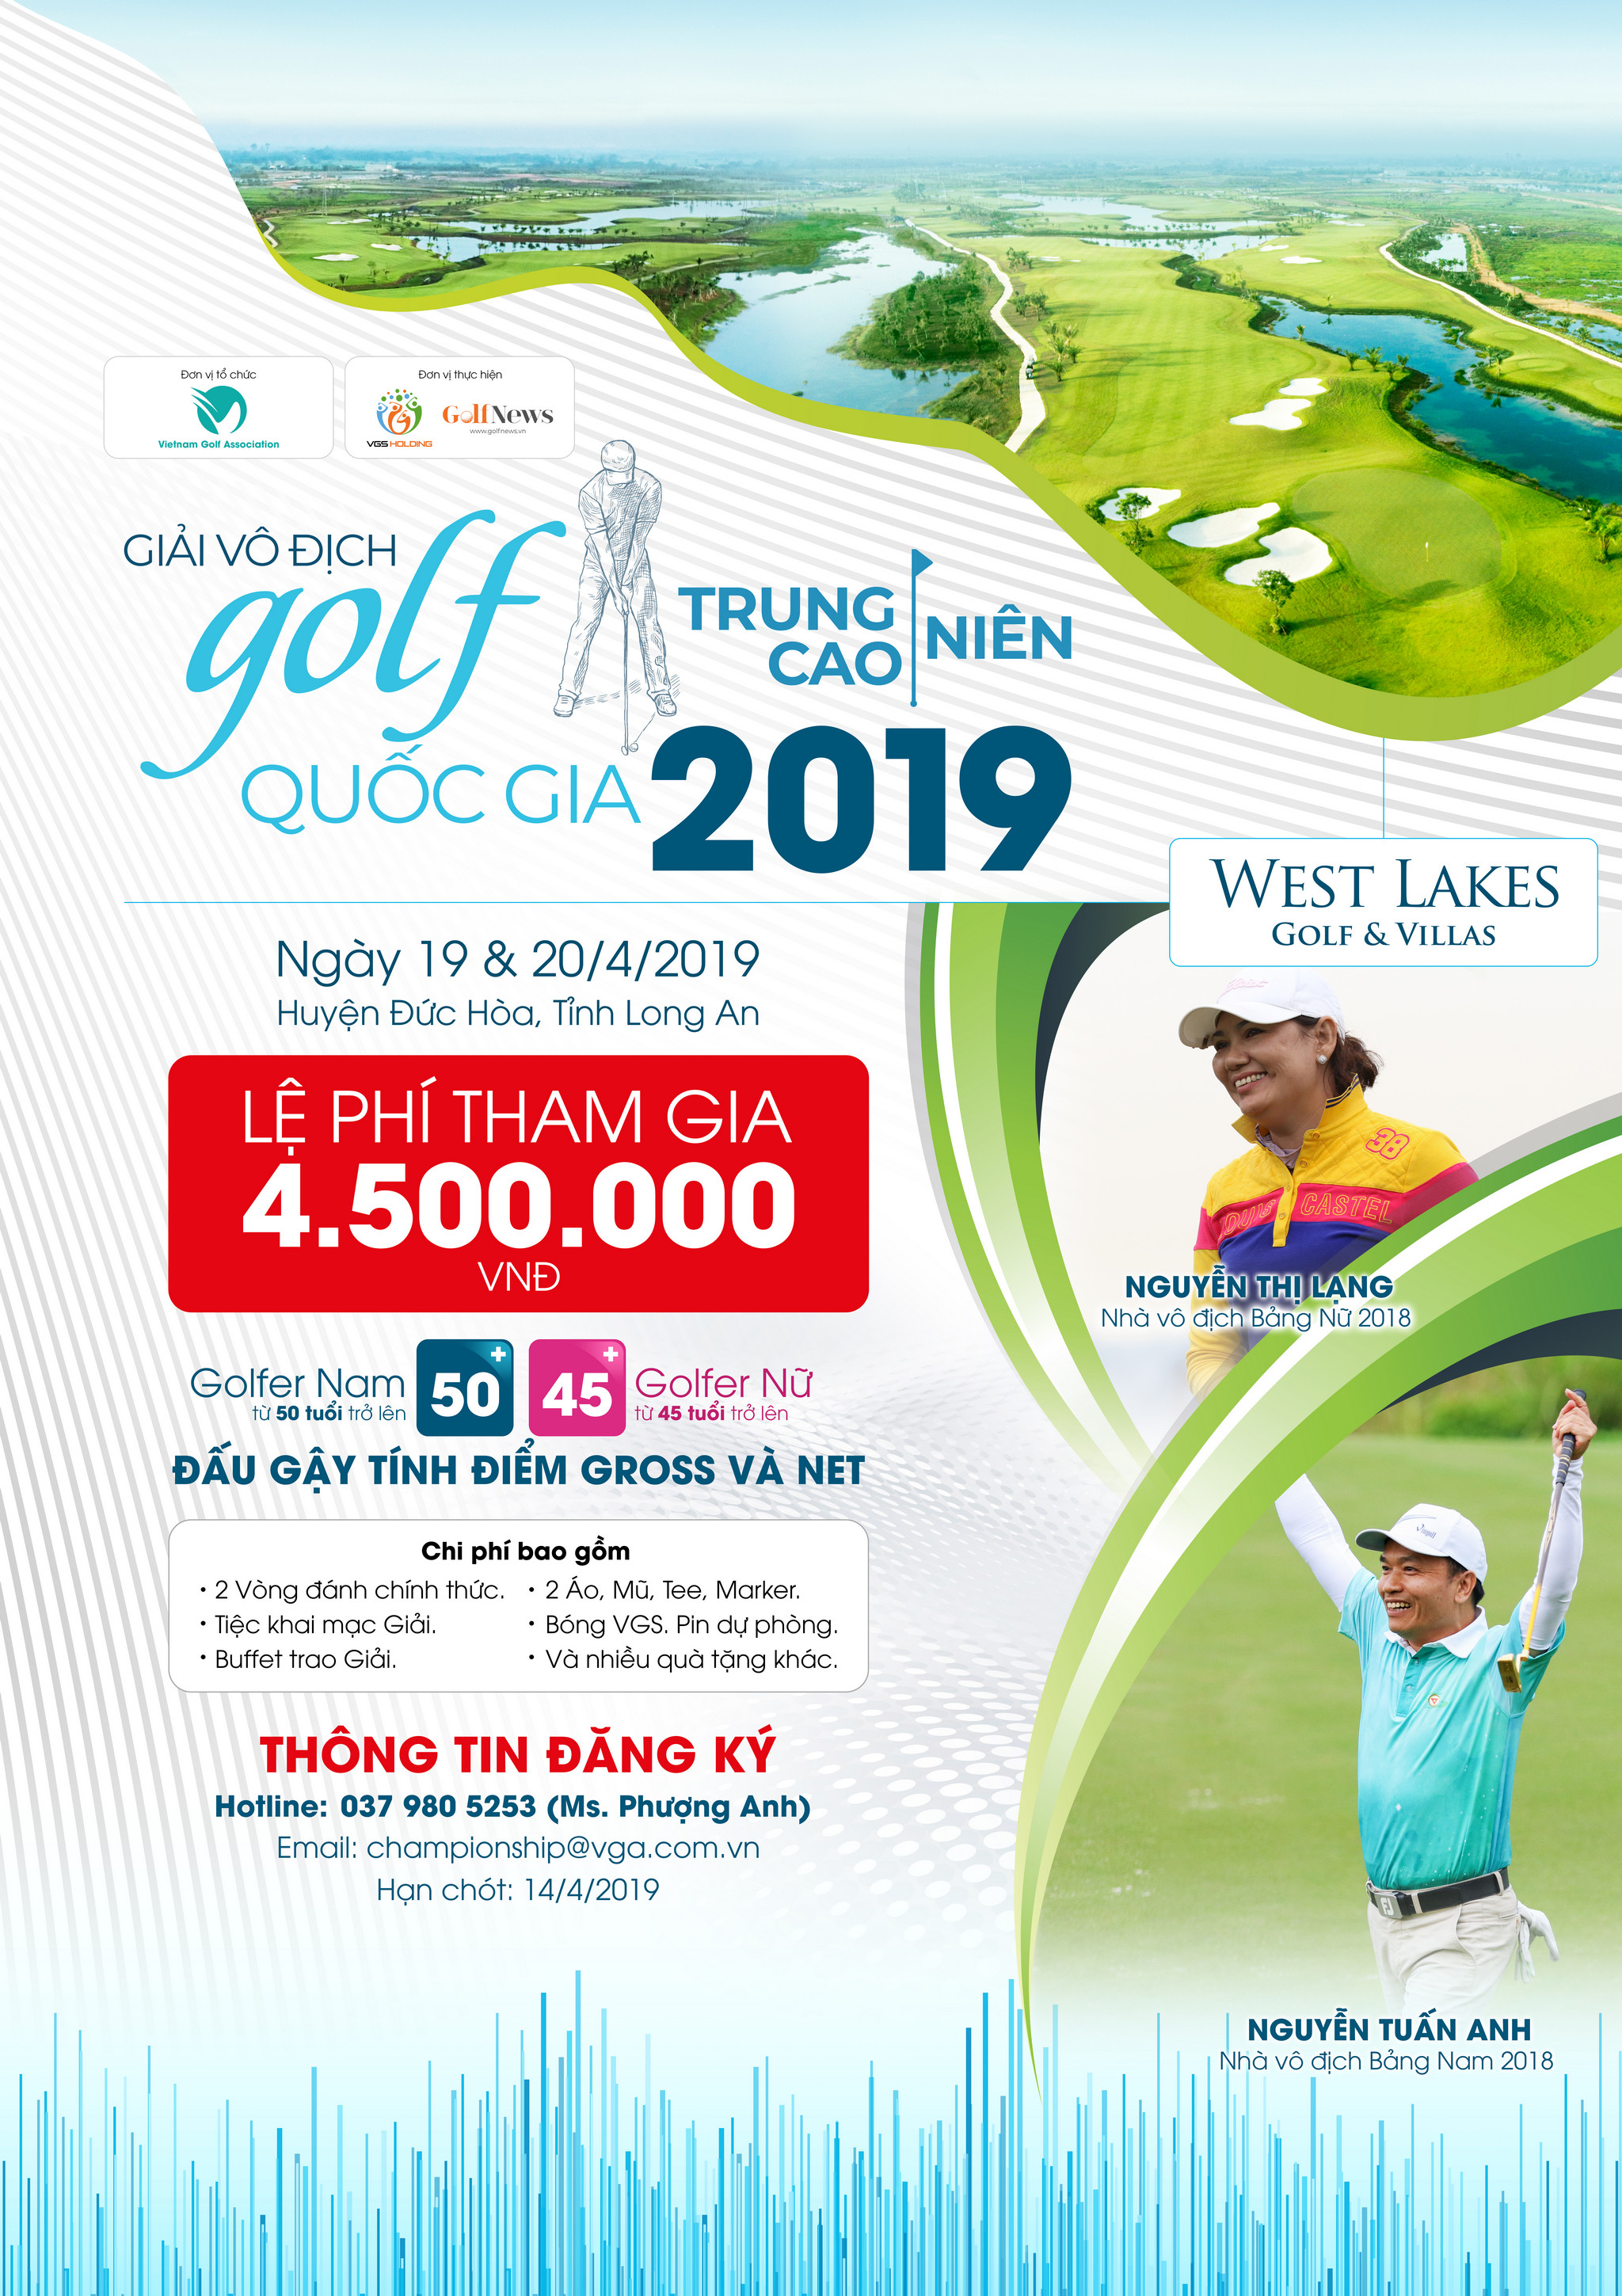 Giải Vô địch golf Trung - Cao niên Quốc gia 2019: Sân chơi cho golfer kỳ cựu đã trở lại